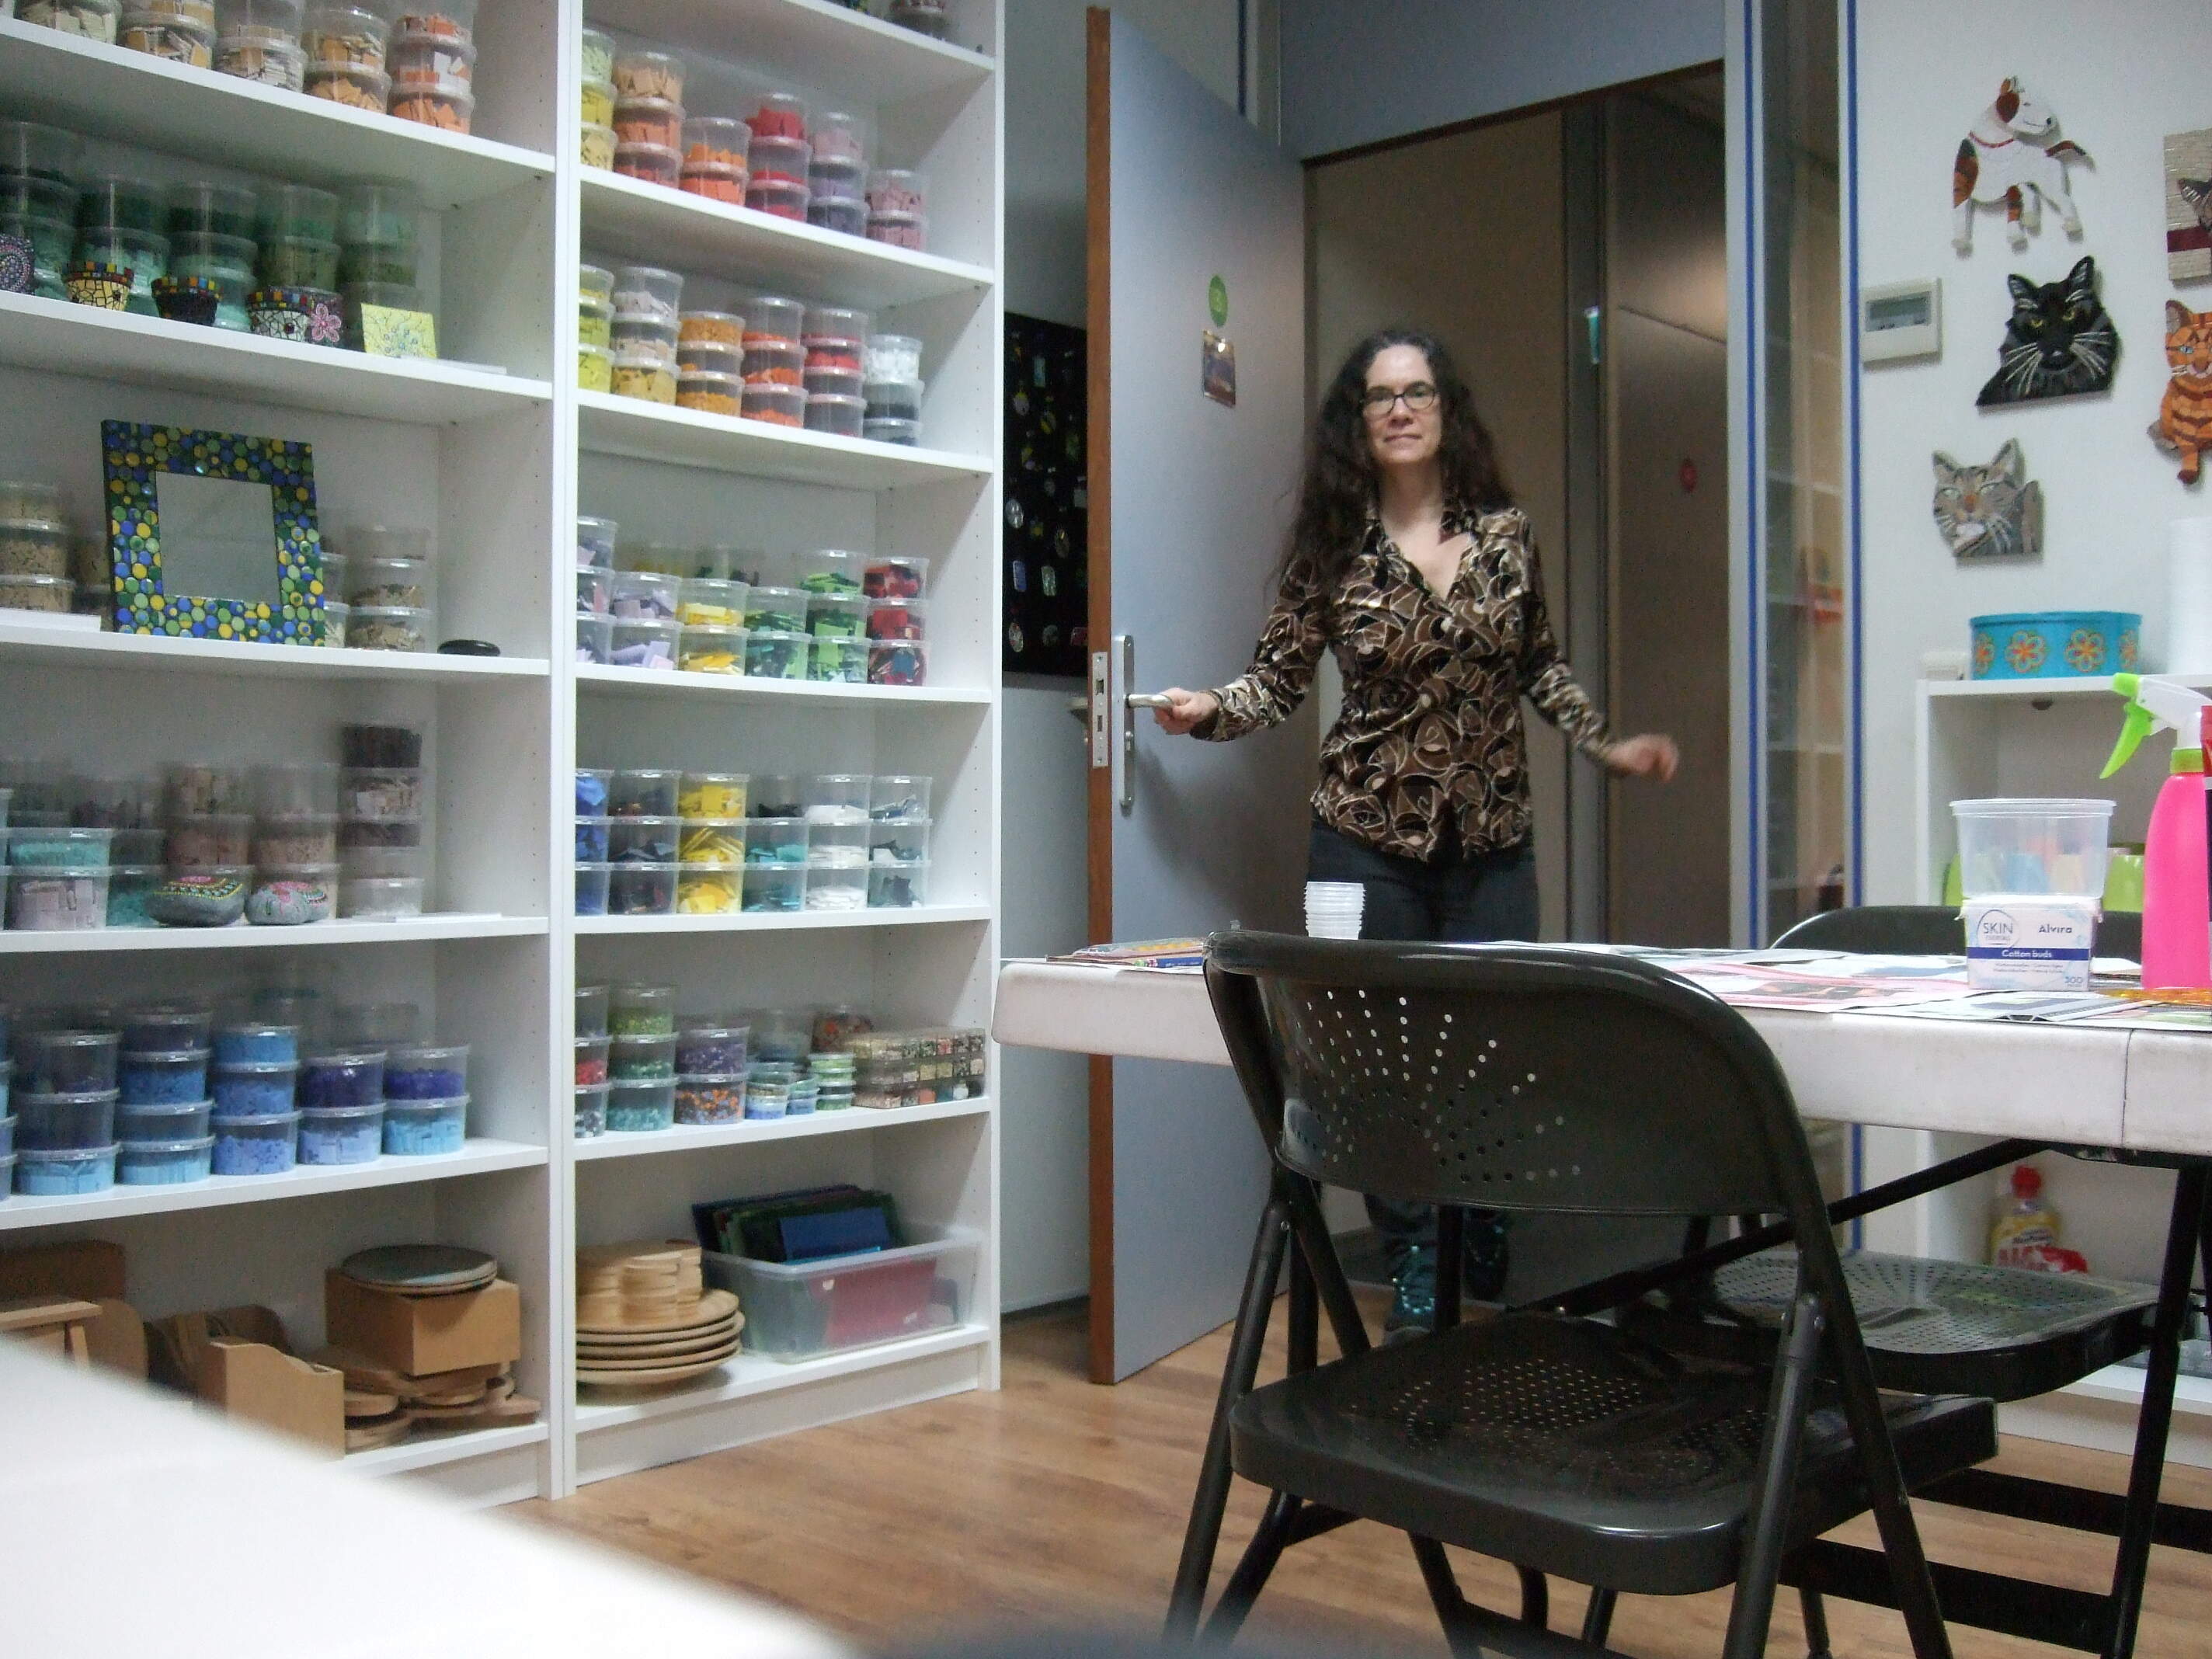 Kunstenares Hella Steins komt haar atelier binnen. Het atelier staat vol met mozaiek en dot paintings. De kasten zijn gevuld met kleurrijk mozaiekmateriaal.